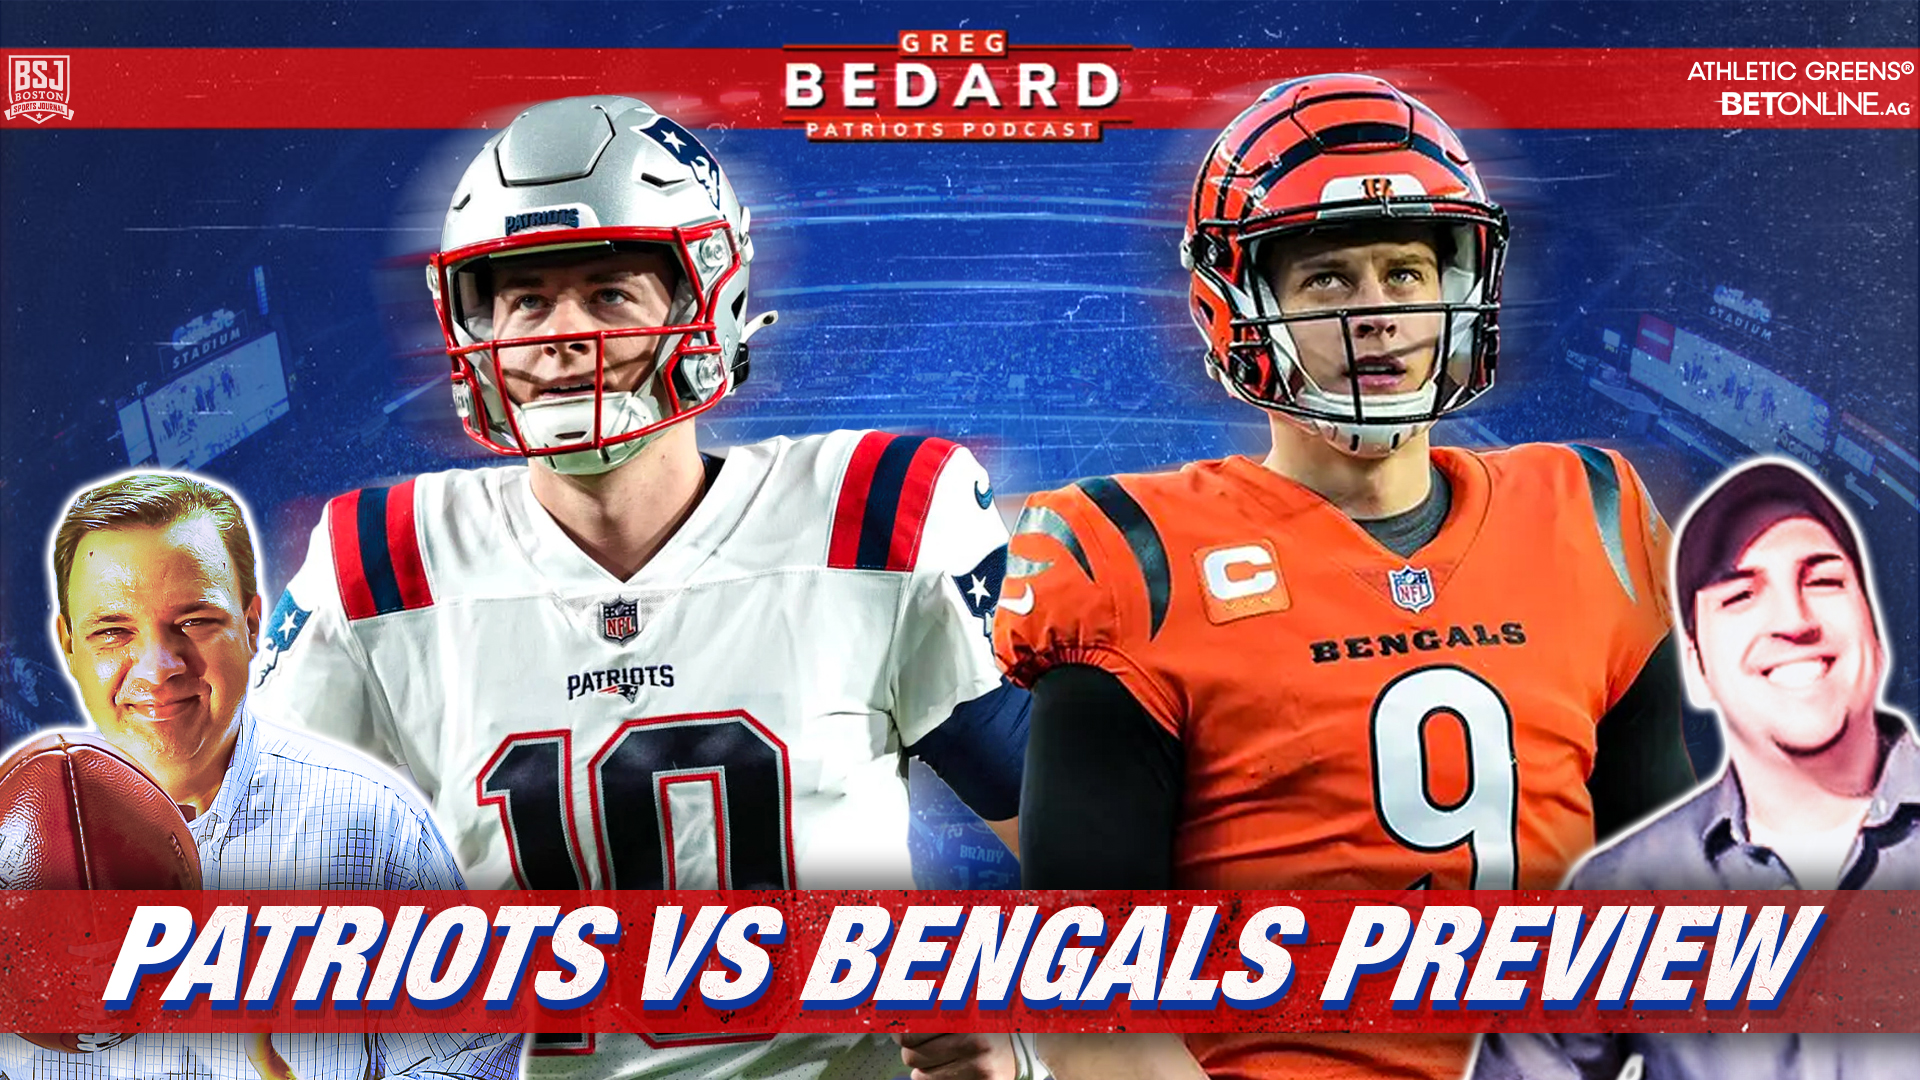 Bedard Previews Patriots vs Bengals CLNS Media